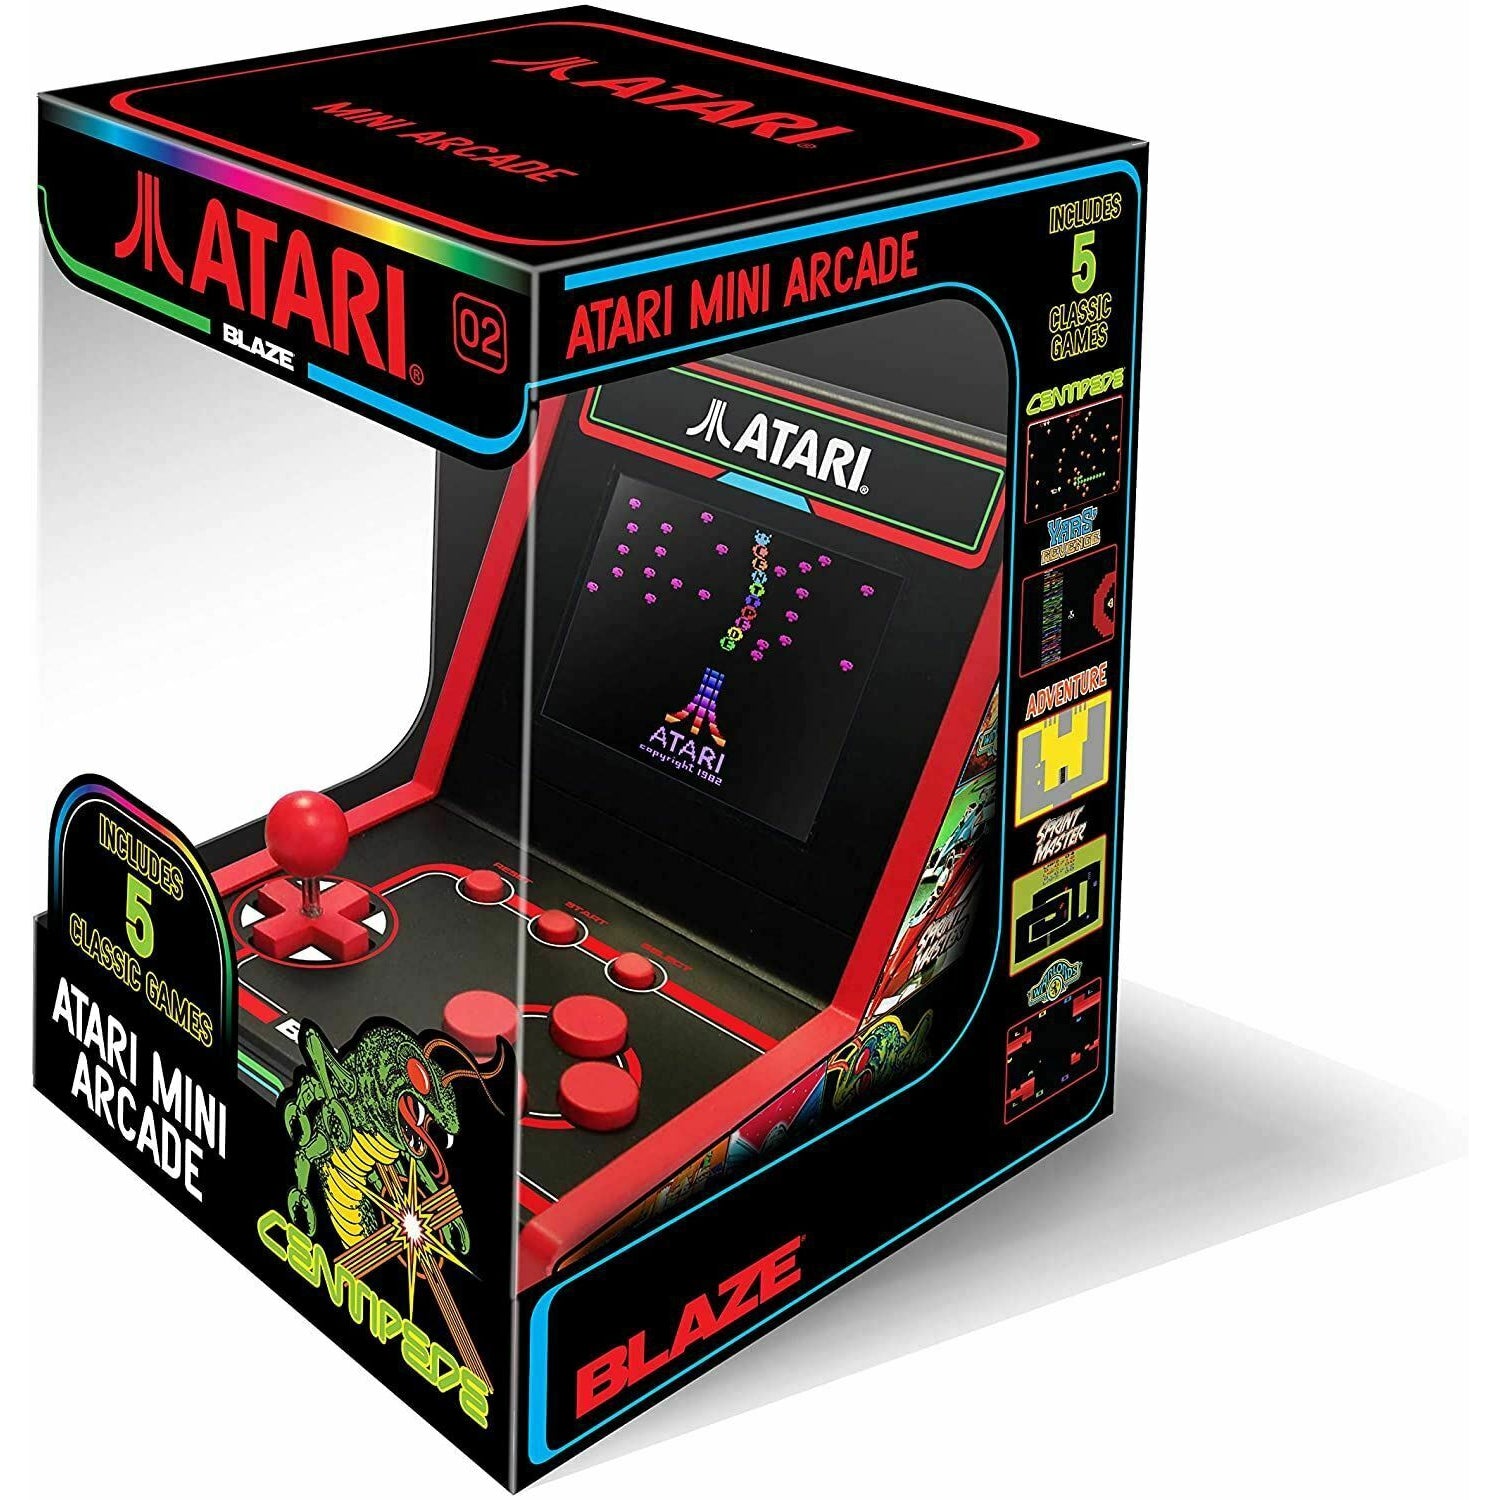 Atari 5 Game Mini Arcade - Centipede + 4 games